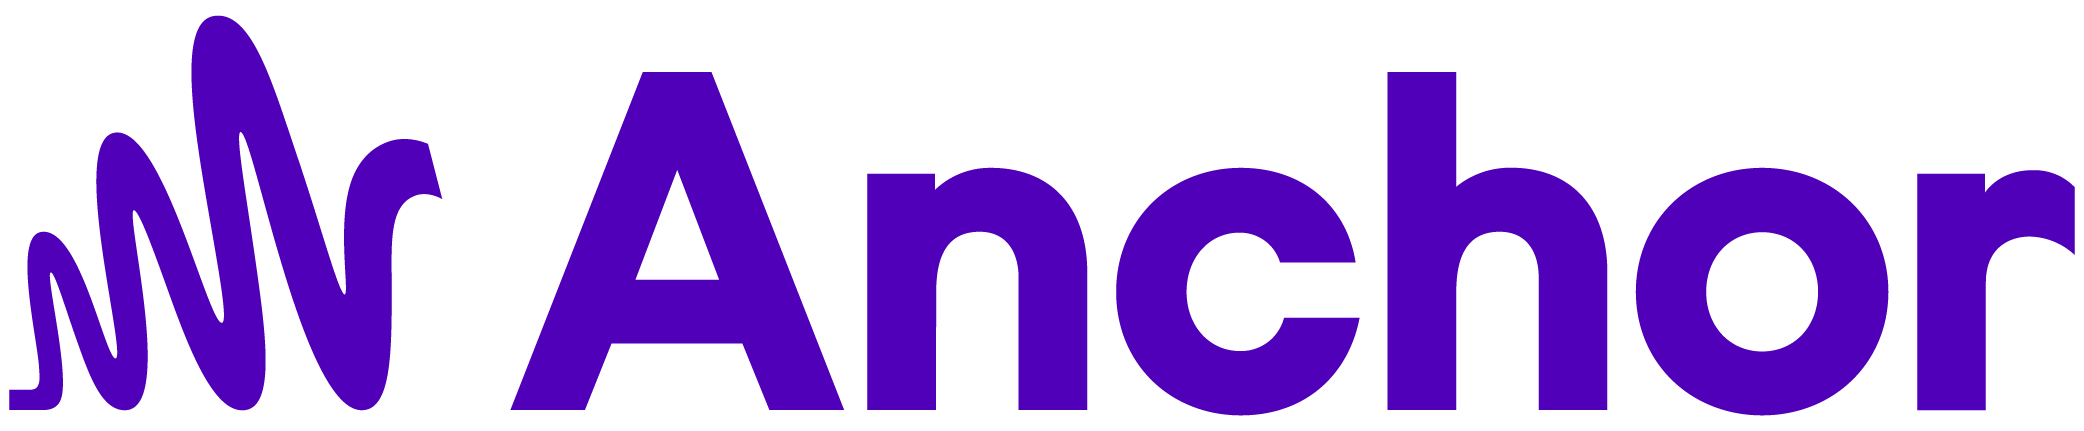 Anchor logo colors